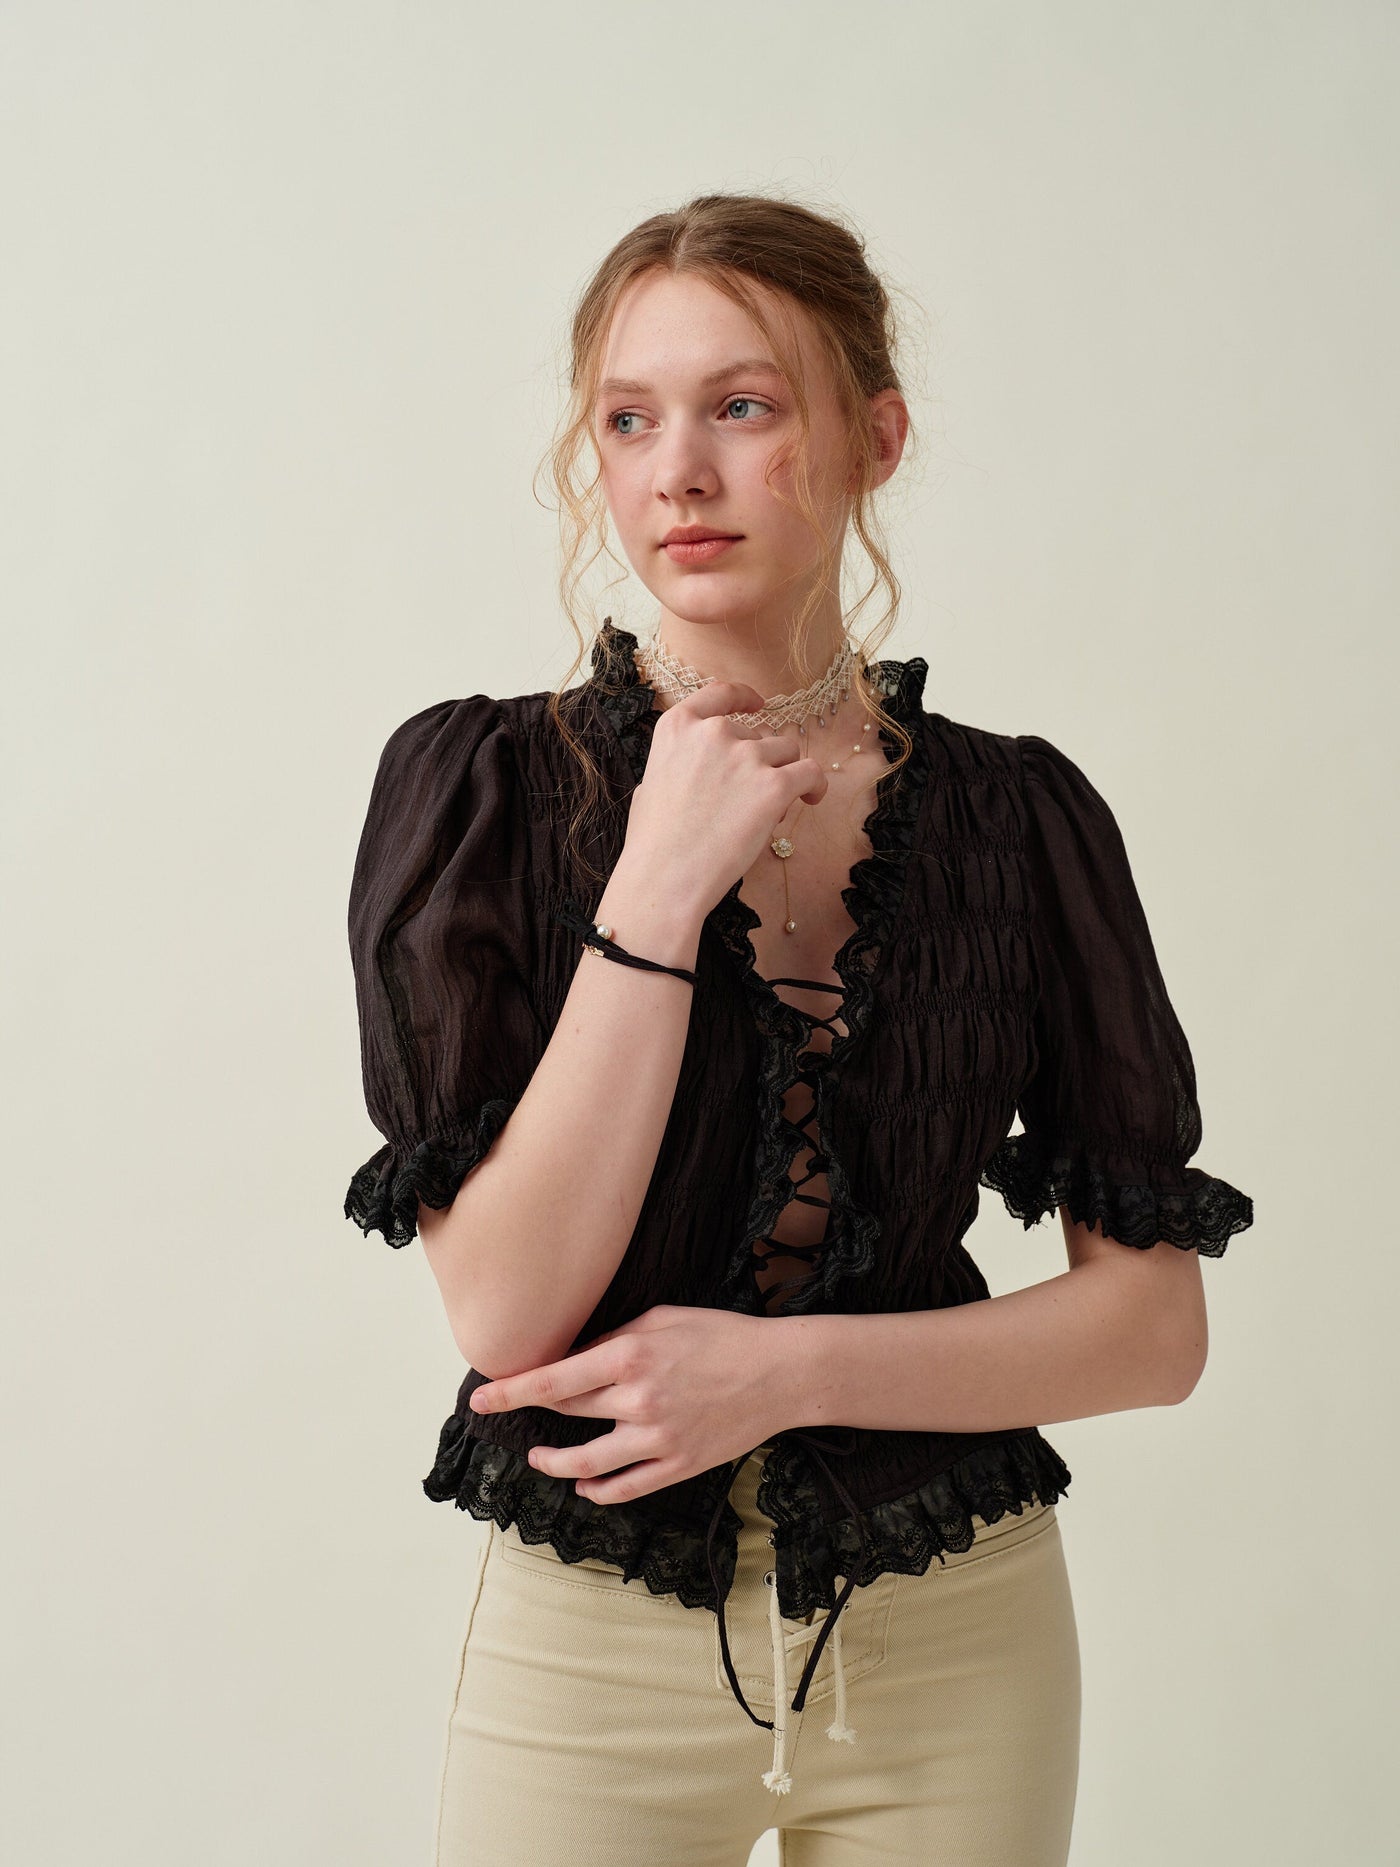 Luna 26 | lace up linen top blouse